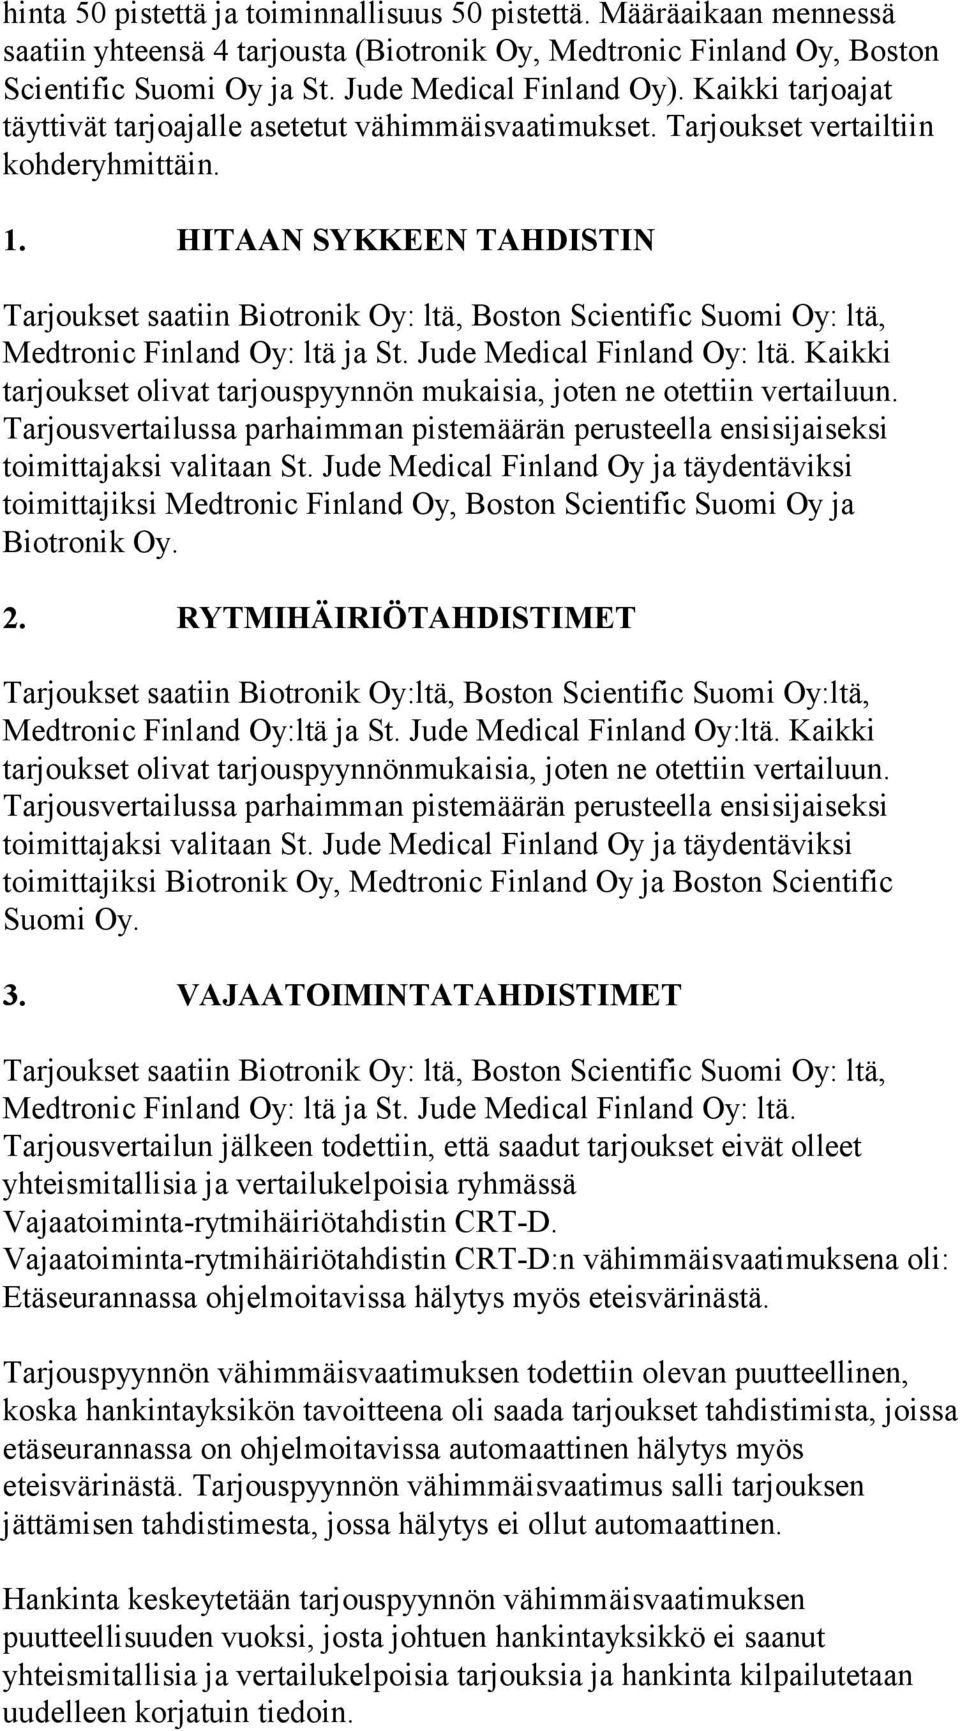 HITAAN SYKKEEN TAHDISTIN Tarjoukset saatiin Biotronik Oy: ltä, Boston Scientific Suomi Oy: ltä, Medtronic Finland Oy: ltä ja St. Jude Medical Finland Oy: ltä.